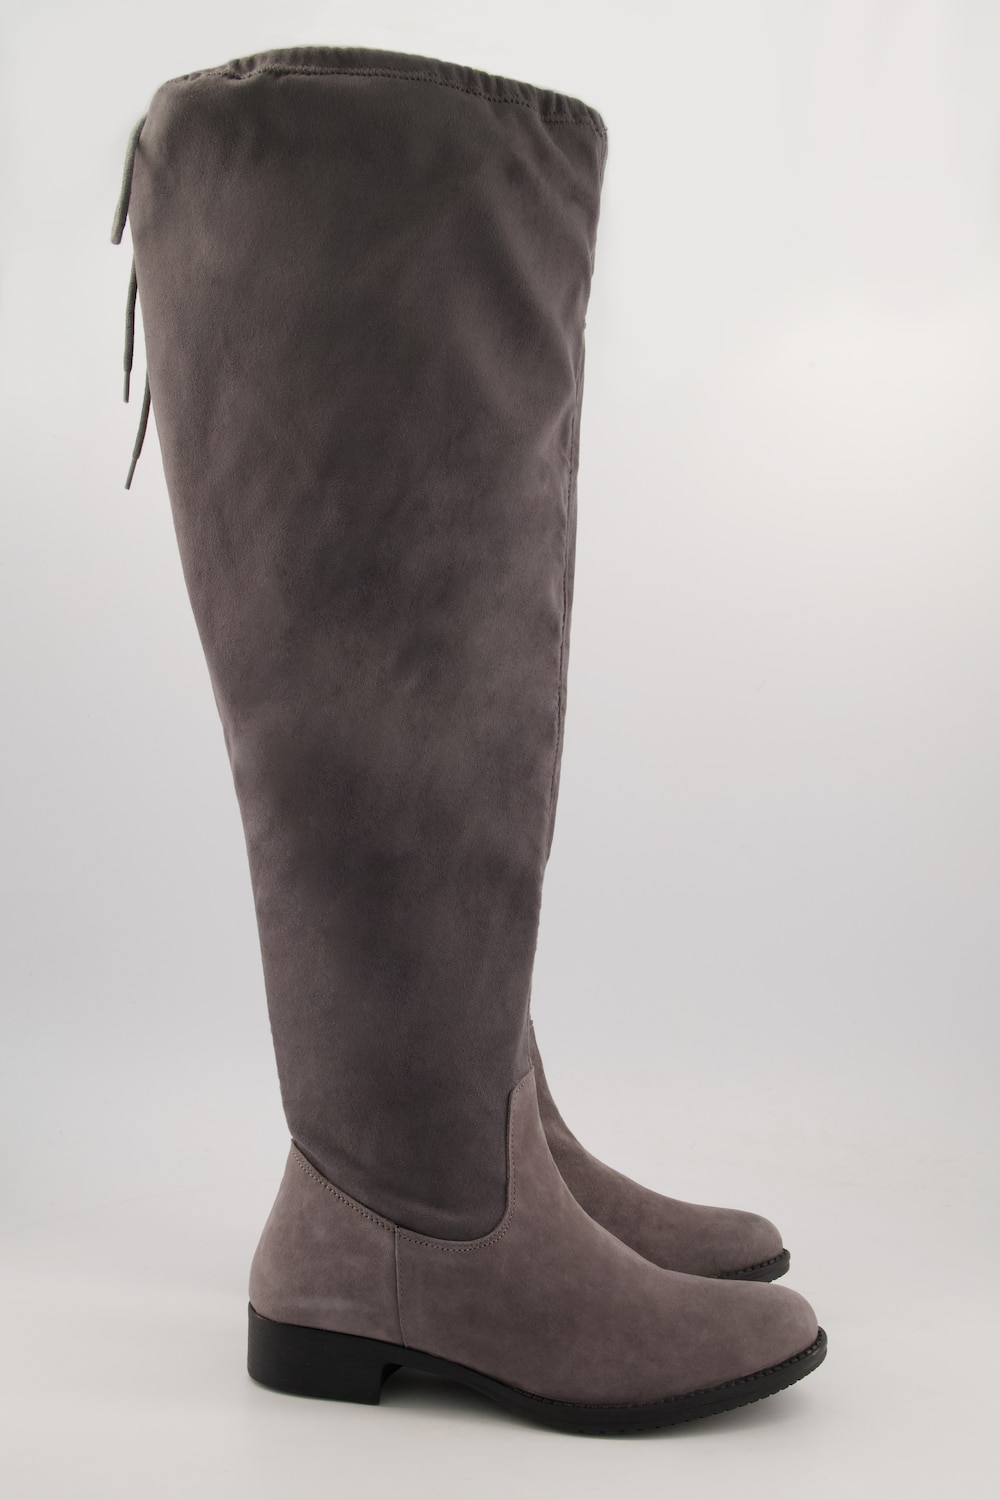 Grosse Grössen Overknee-Stiefel, Damen, grau, Größe: 39, Leder/Synthetische Fasern, Ulla Popken von Ulla Popken